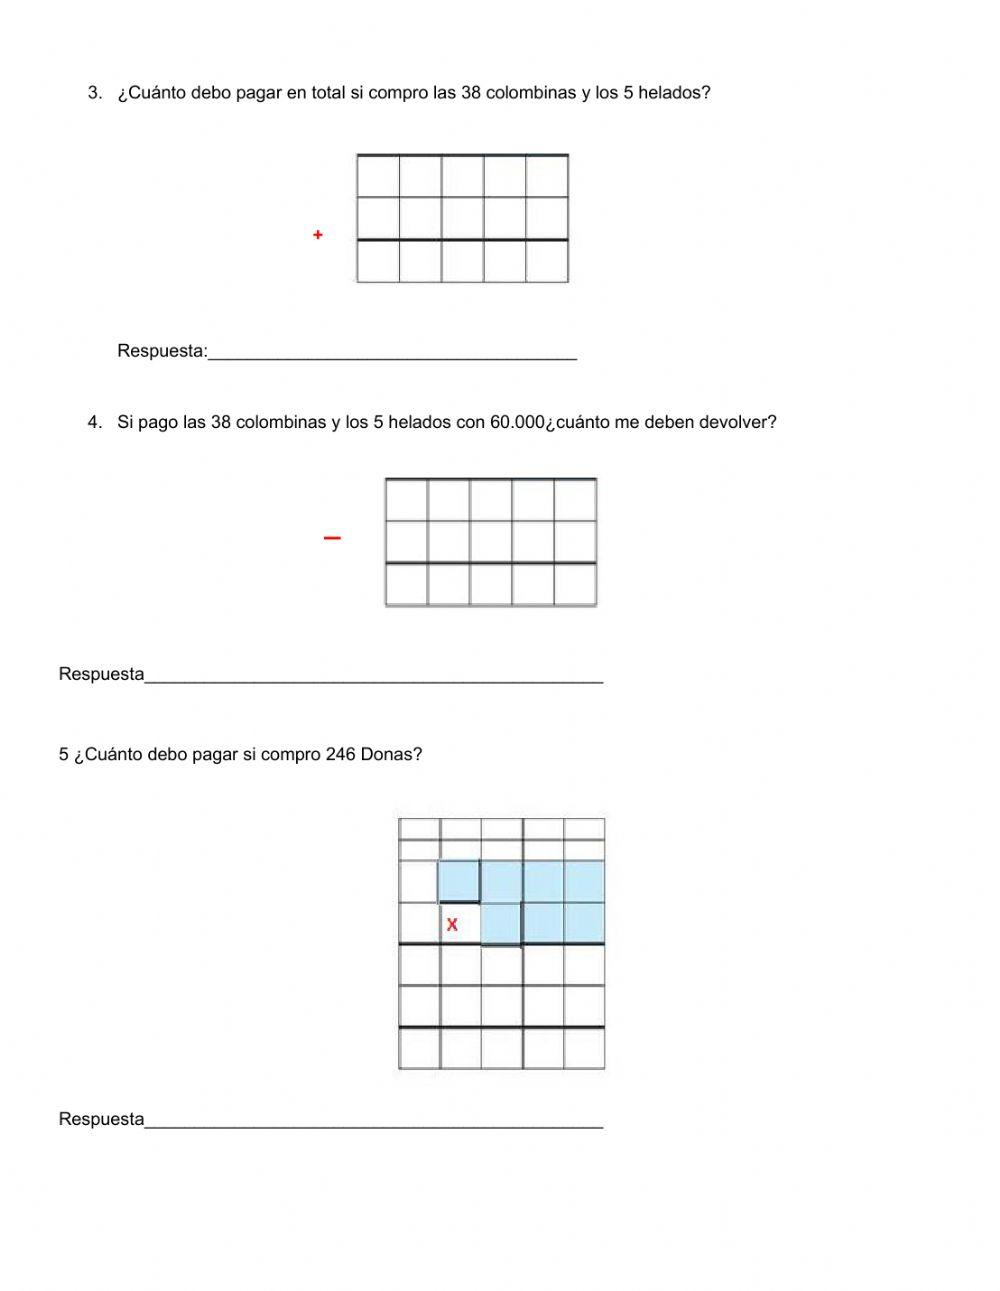 Quiz de matemática interactive worksheet